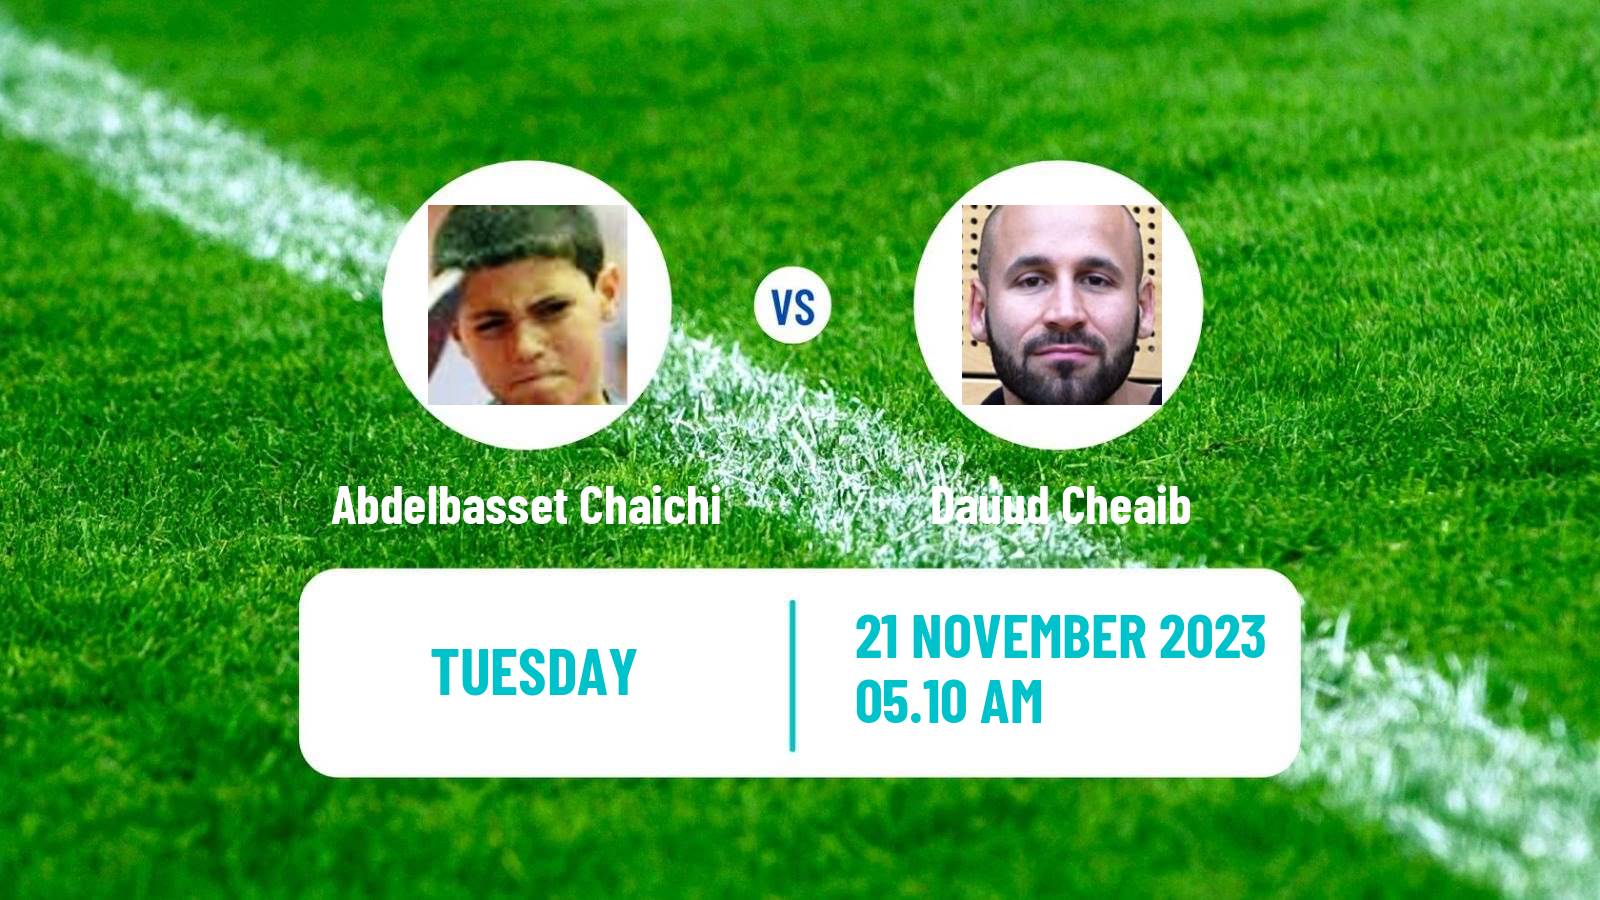 Table tennis Challenger Series Men Abdelbasset Chaichi - Dauud Cheaib